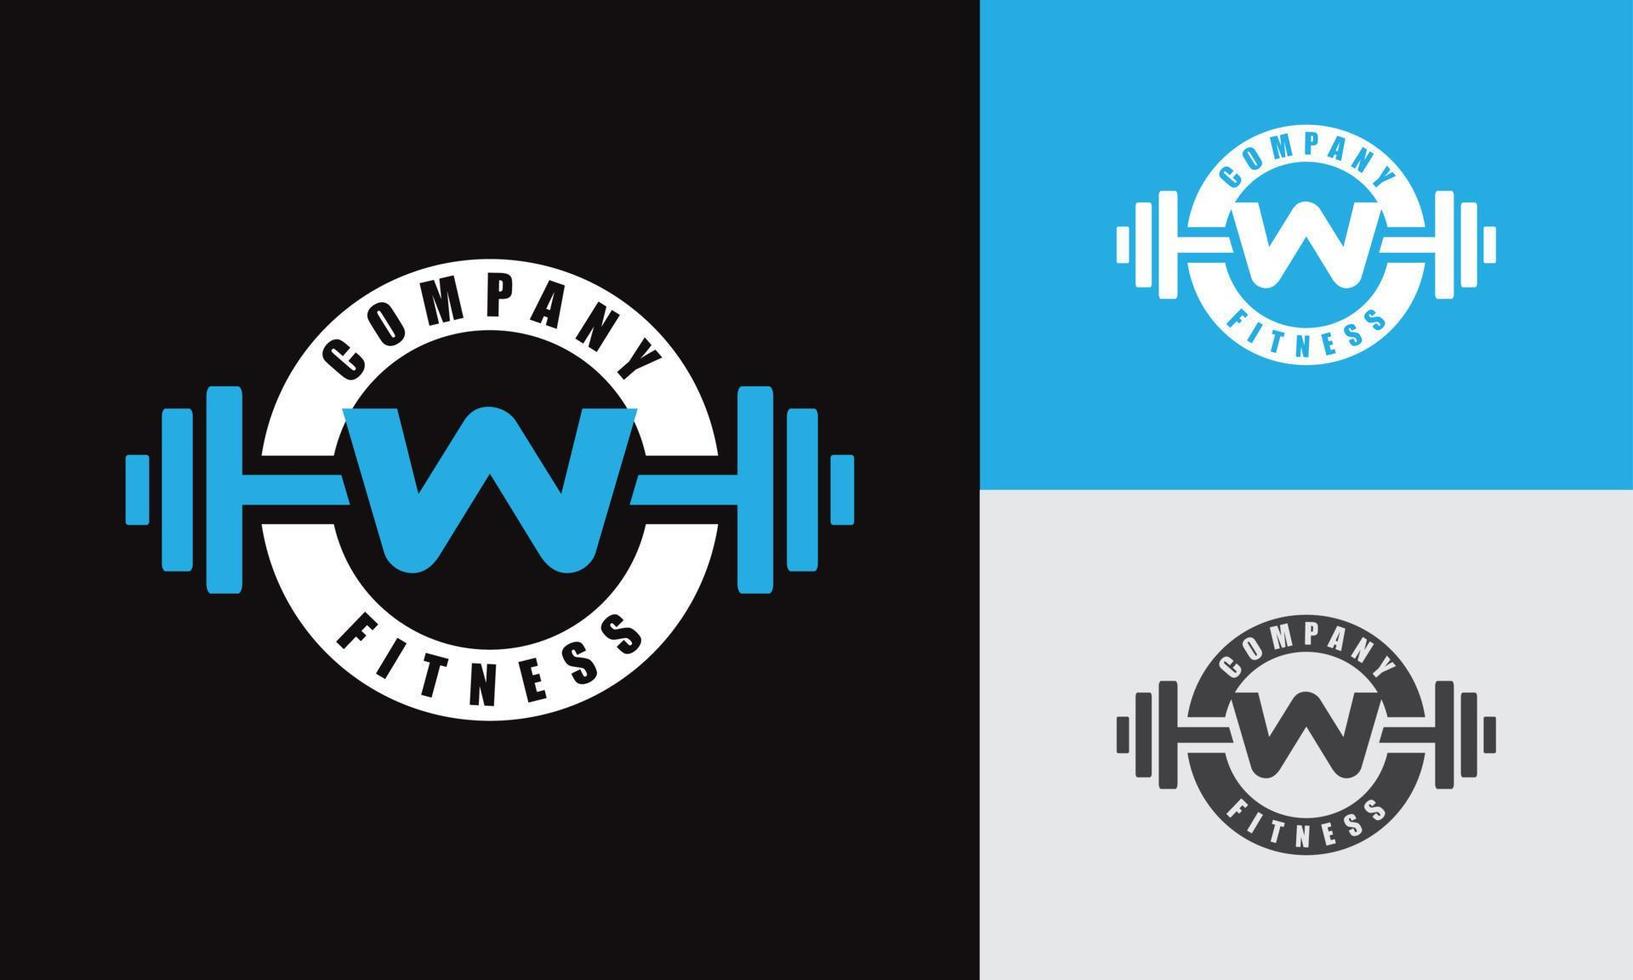 lettera w fitness emblema logo vettore